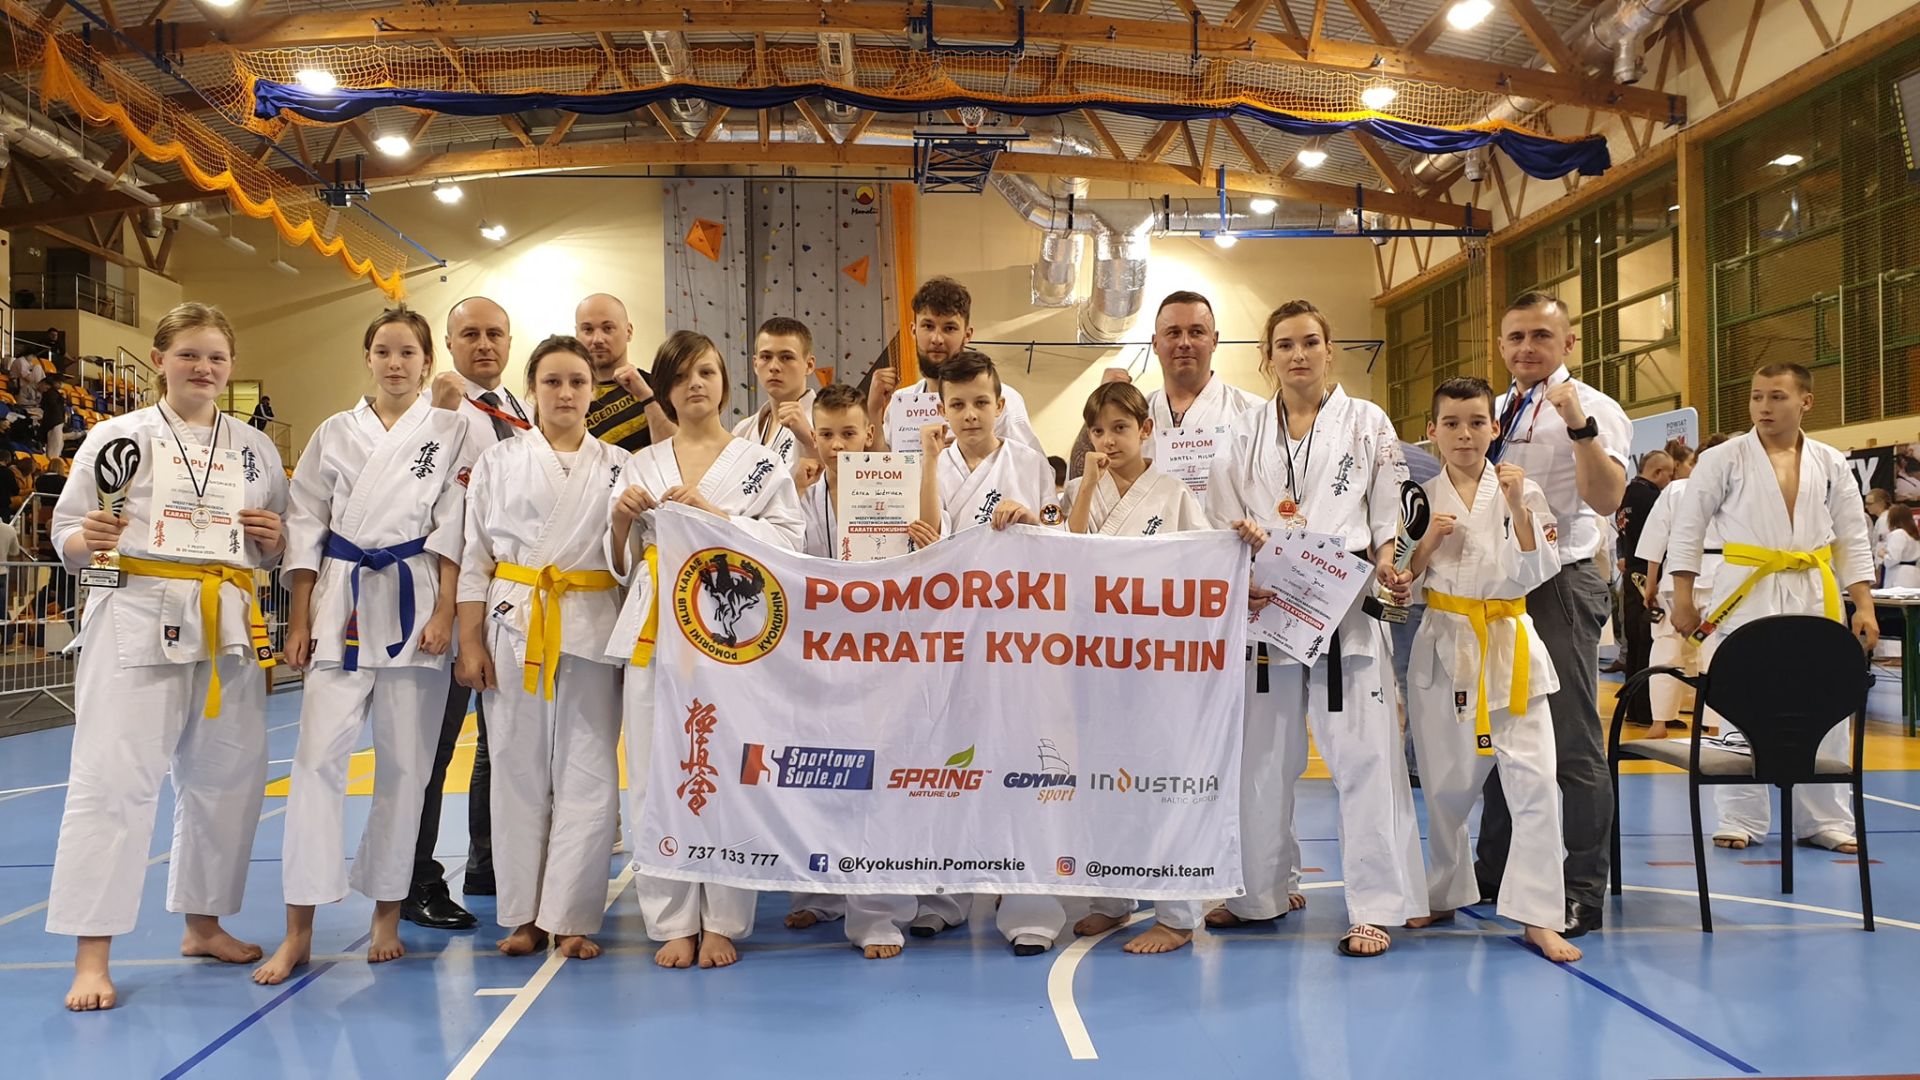 Pomorski Klub Karate KYOKUSHIN - zdjęcie grupowe 